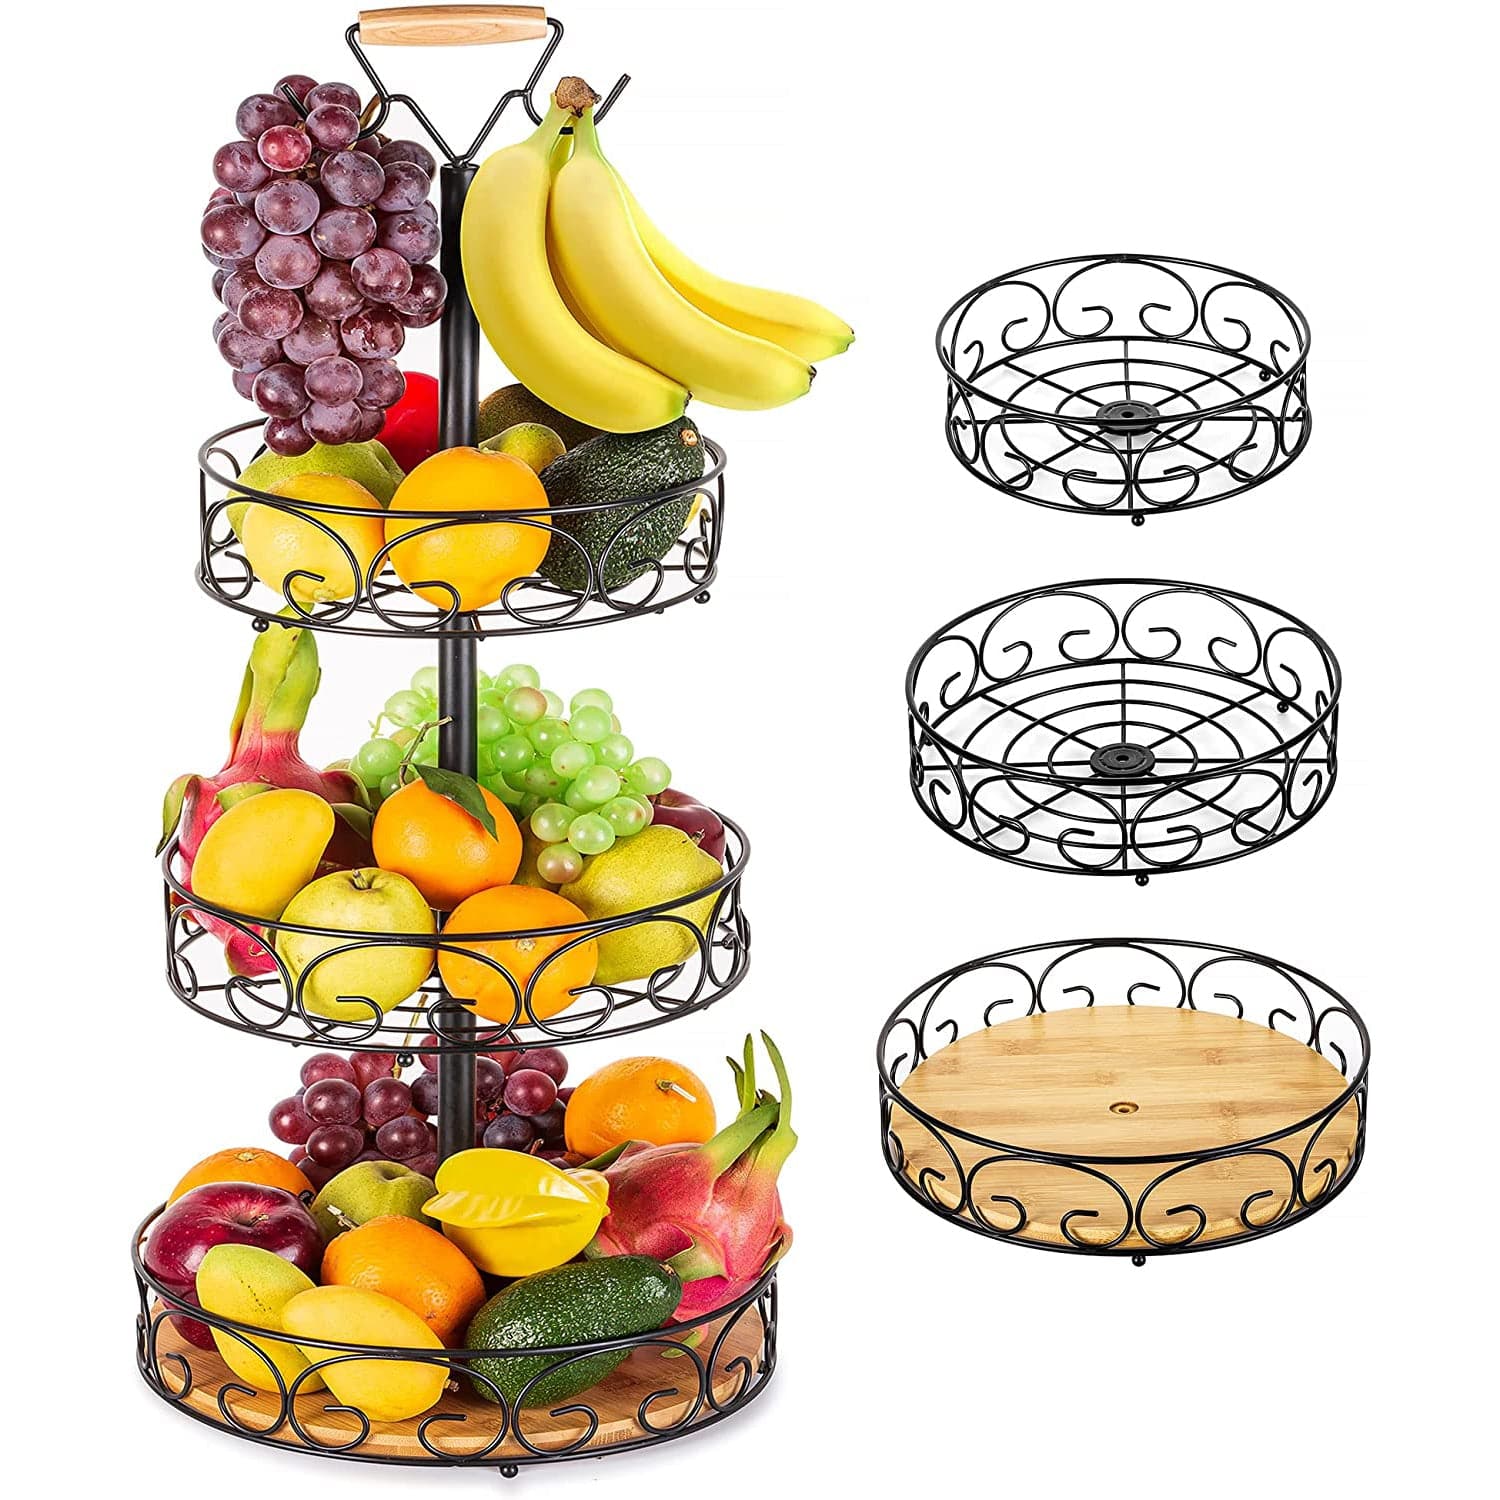 Etechmart Fruit Basket with Banana Hanger